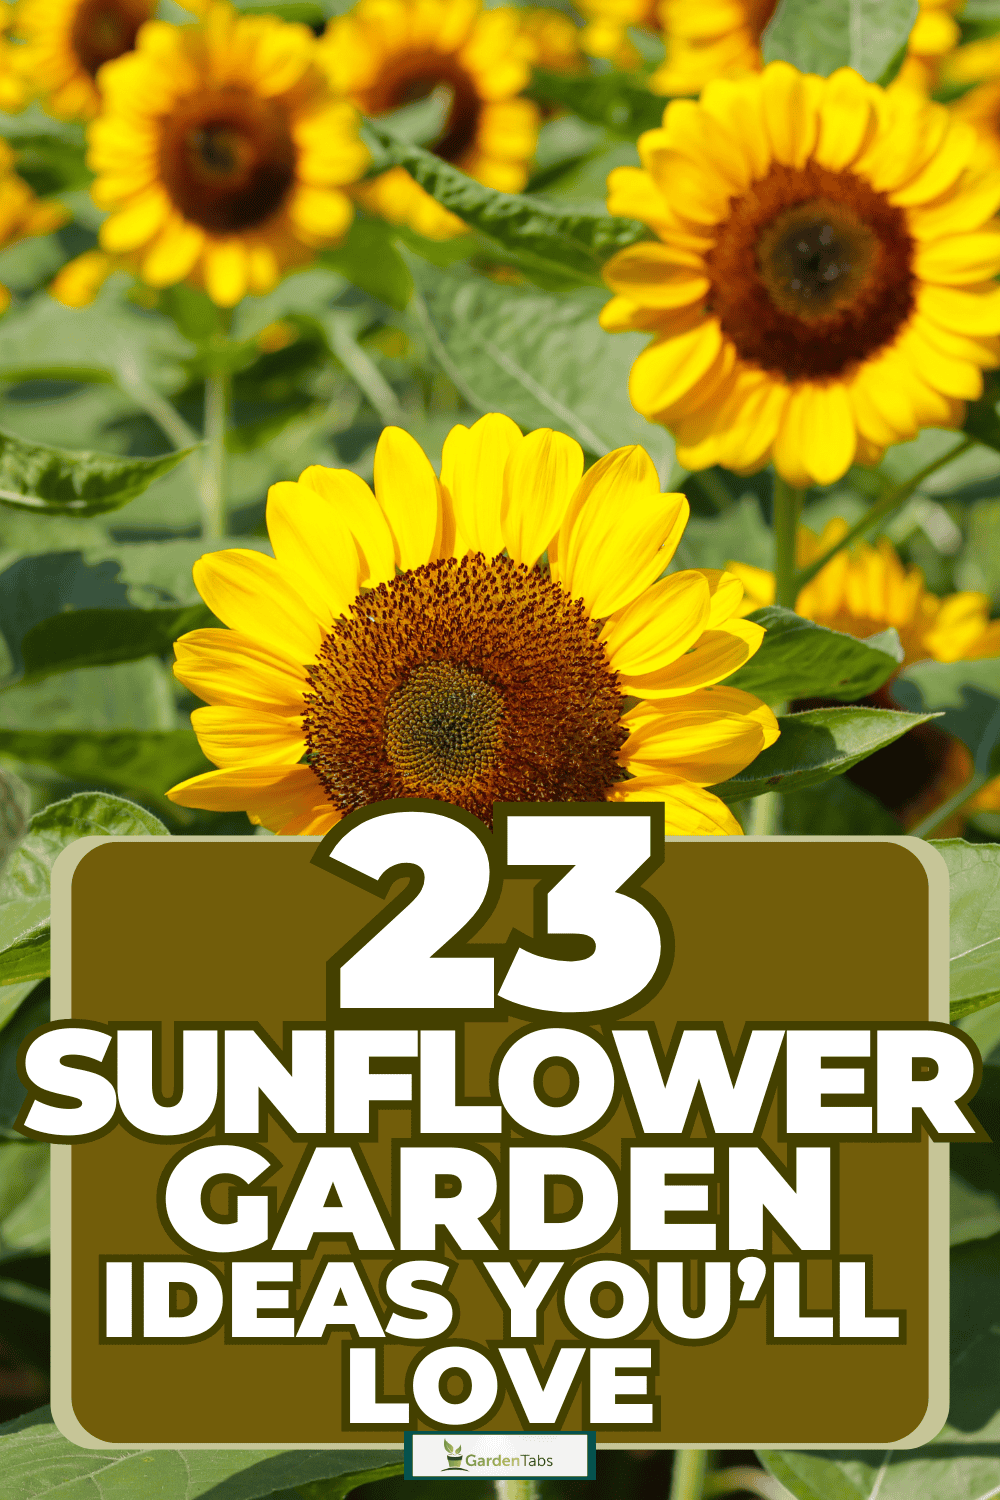 23 Sunflower Garden Ideas You’ll Love